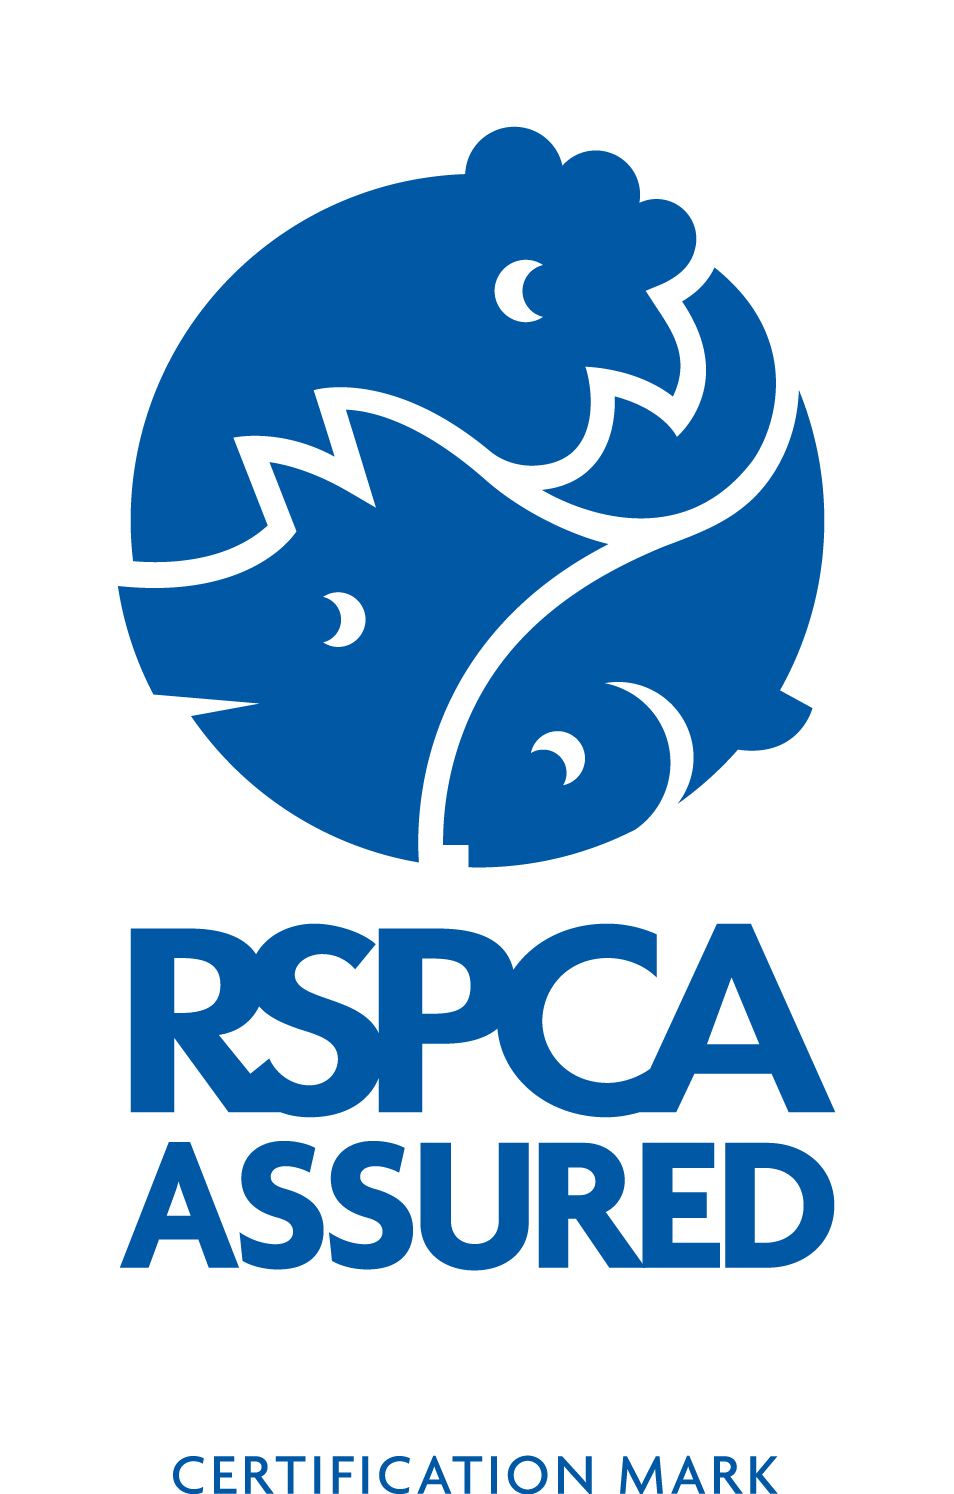 RSPCA Assured logo blue